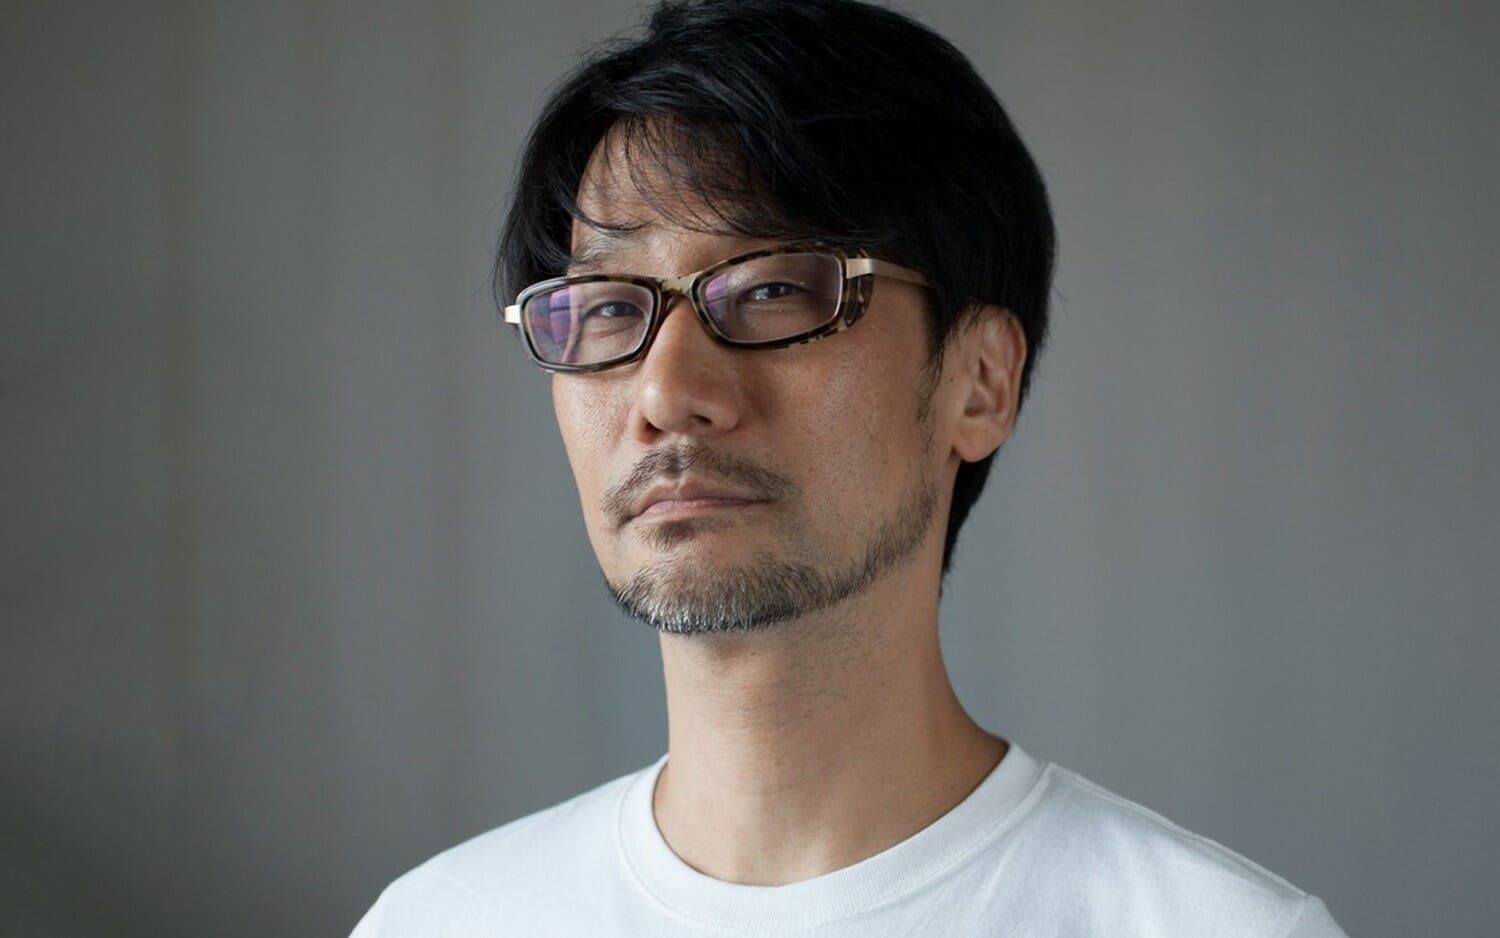 Diseñador de videojuegos Hideo Kojima está interesado en incursionar en otra área artística